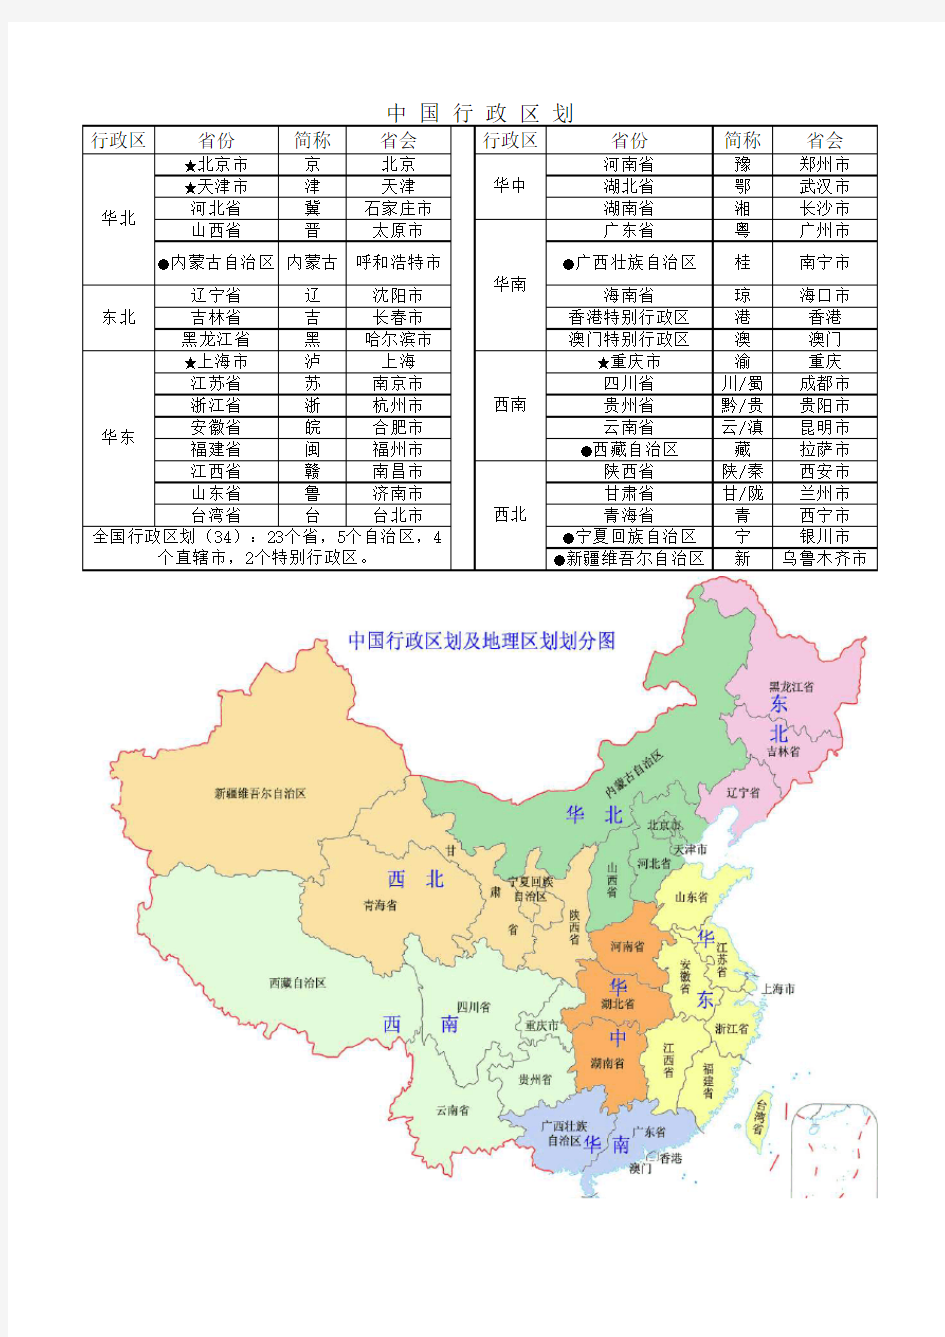 中国行政区划分表及划分地图